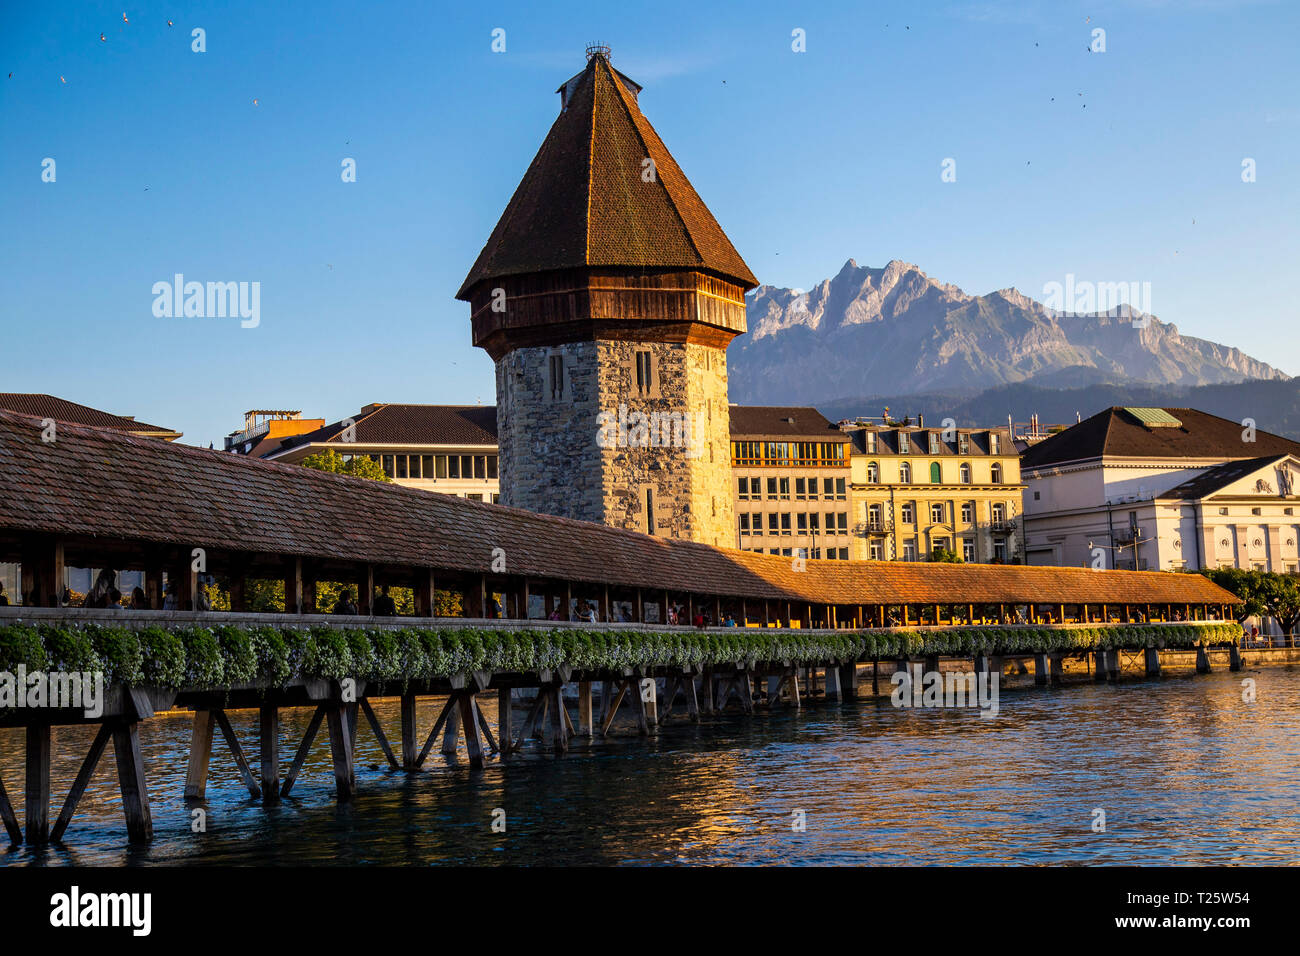 Bellissima medievale ponte di legno che attraversa il lago di Lucerna, è il più antico ponte medievale in Europa Foto Stock